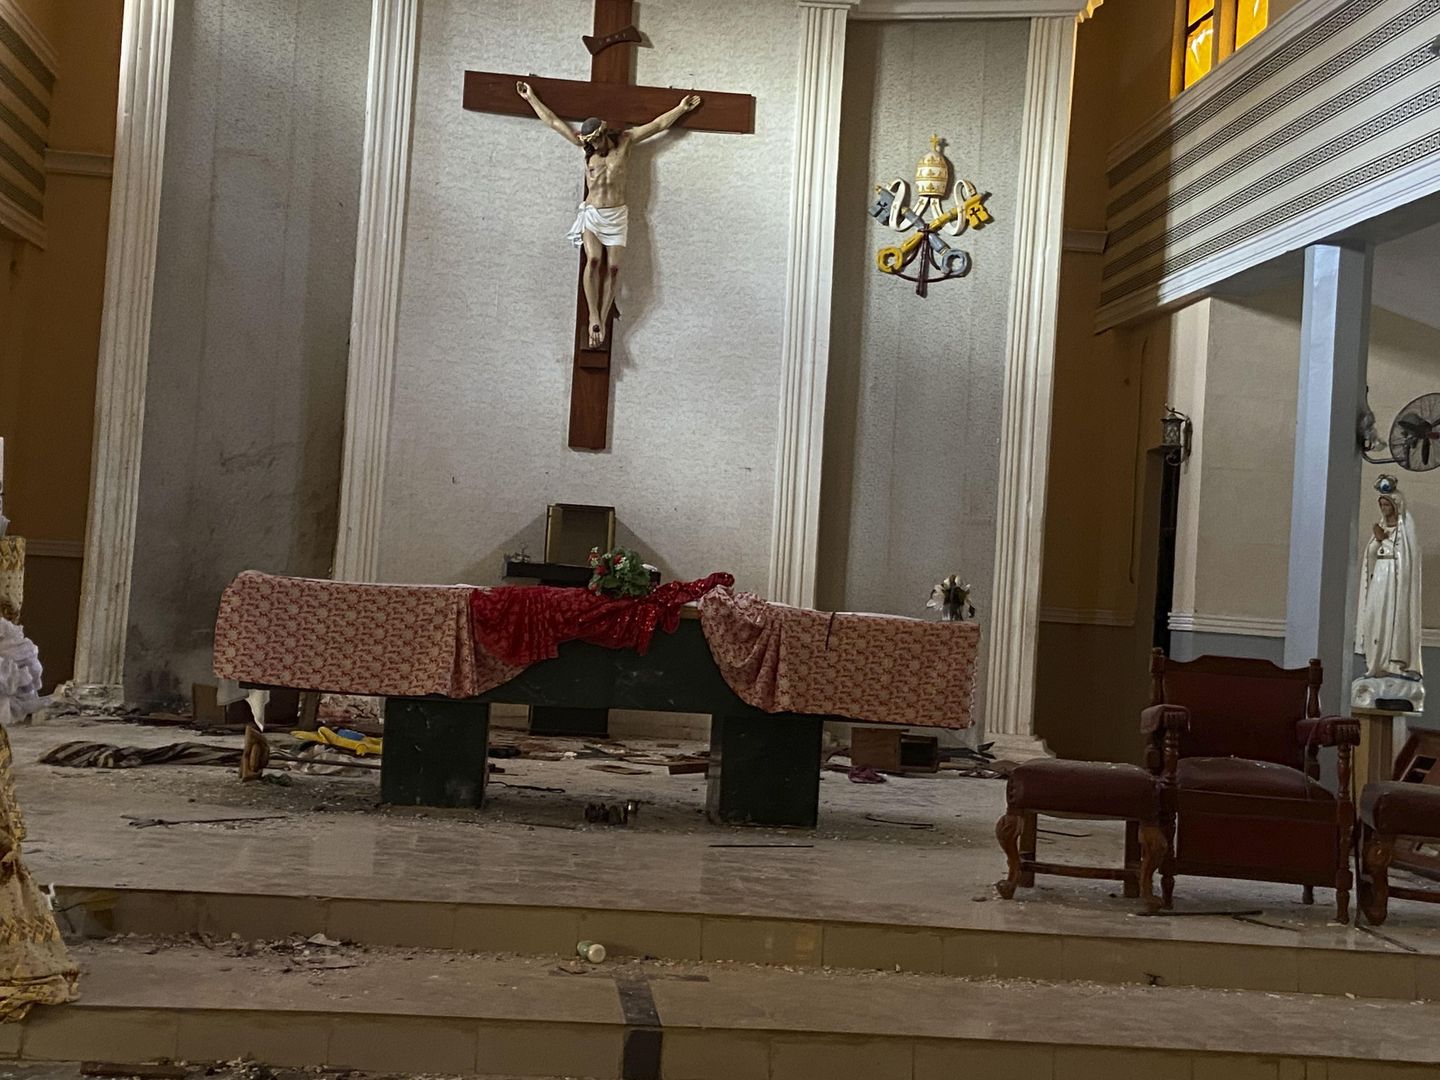 Yetkililer, Nijerya'daki kilise saldırısında 50'den fazla kişinin öldüğünü söyledi